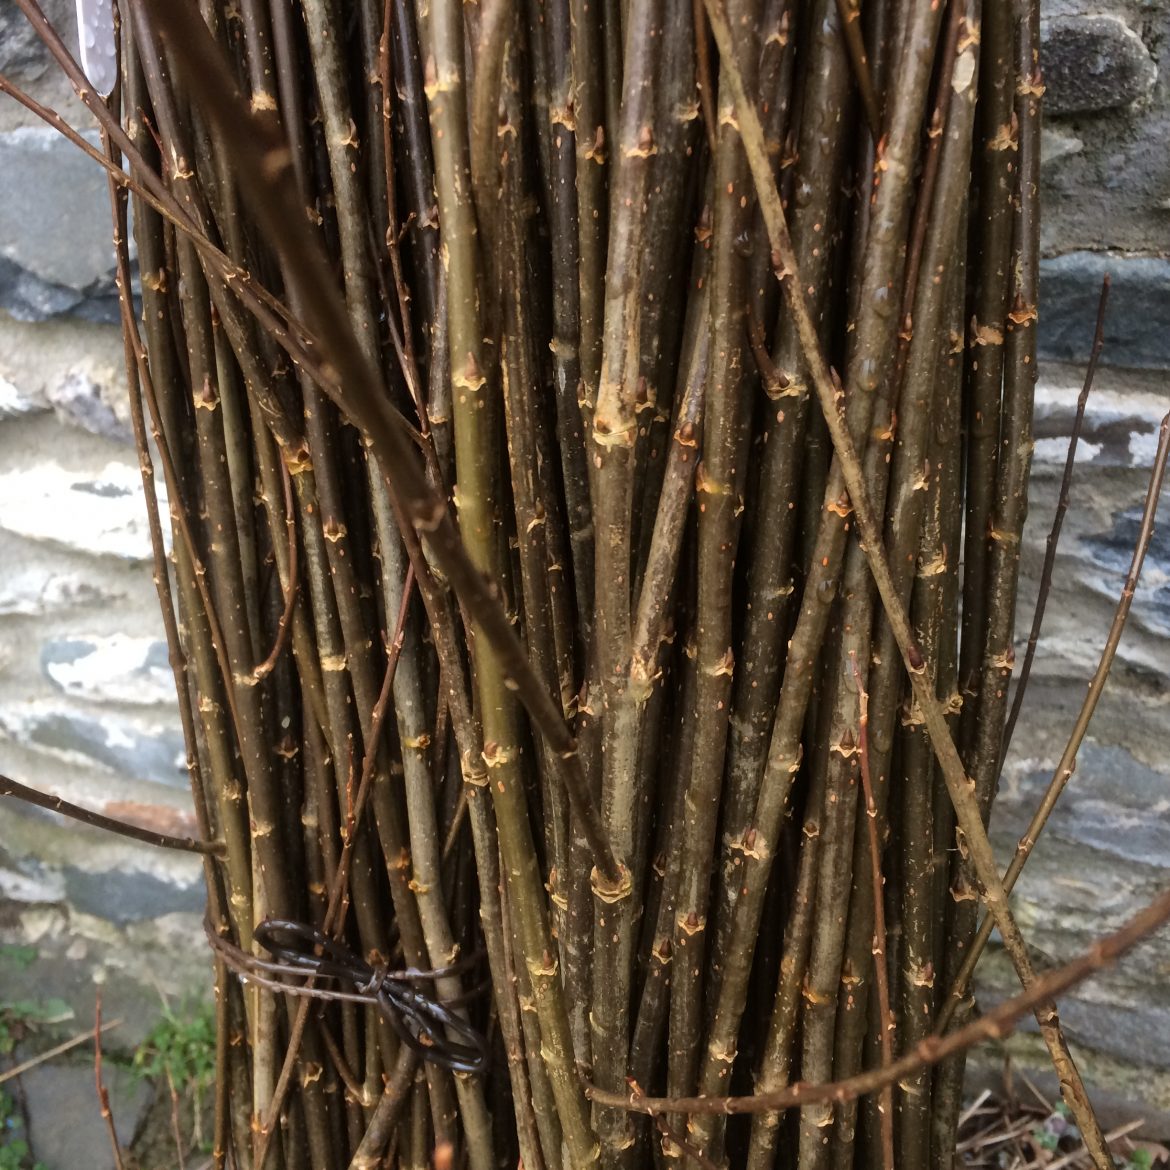 B37 Salix triandra "Black Maul" - West Wales Willows.